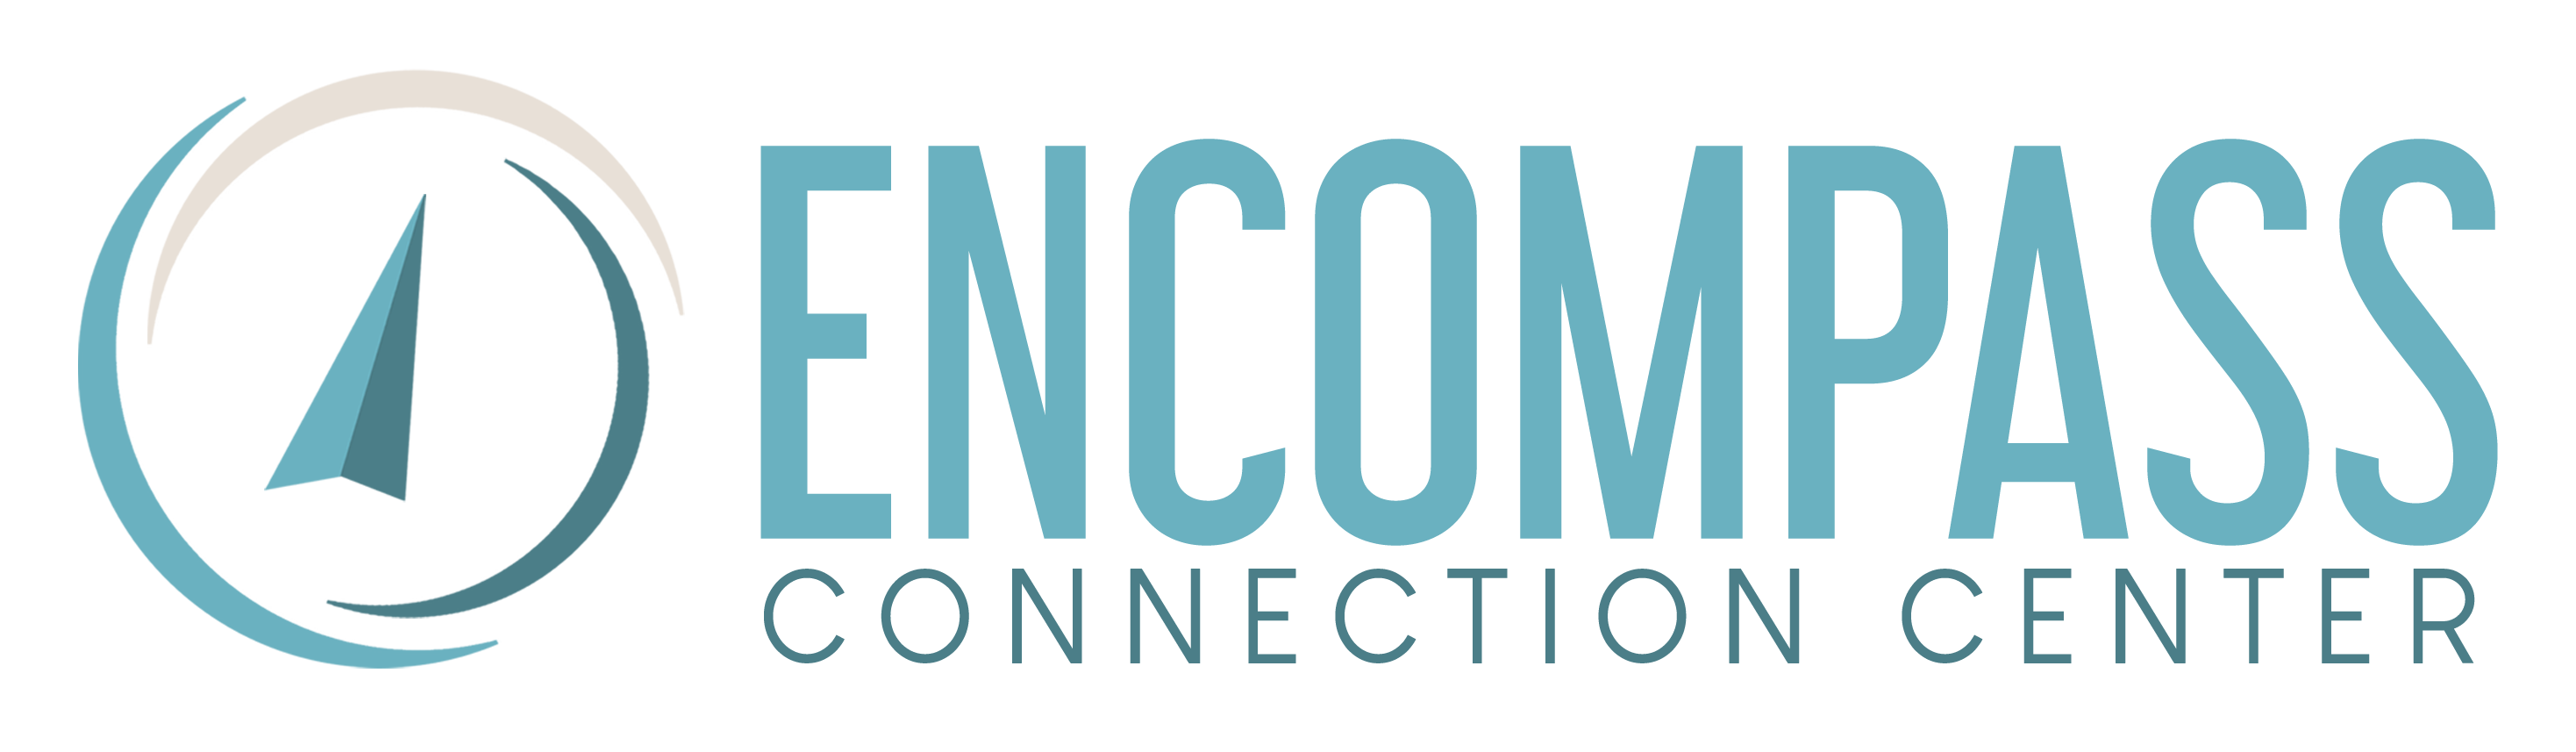 Encompass Connection Center logo